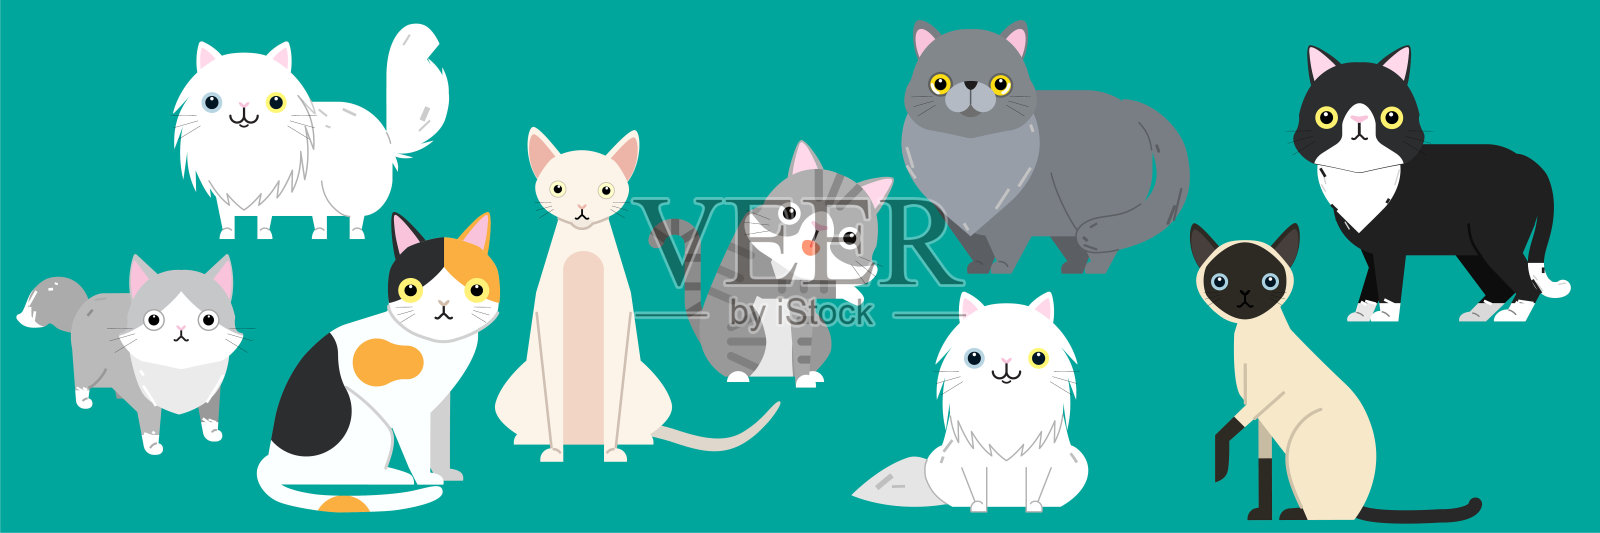 有趣的卡通猫人物不同品种的可爱宠物动物集插画图片素材